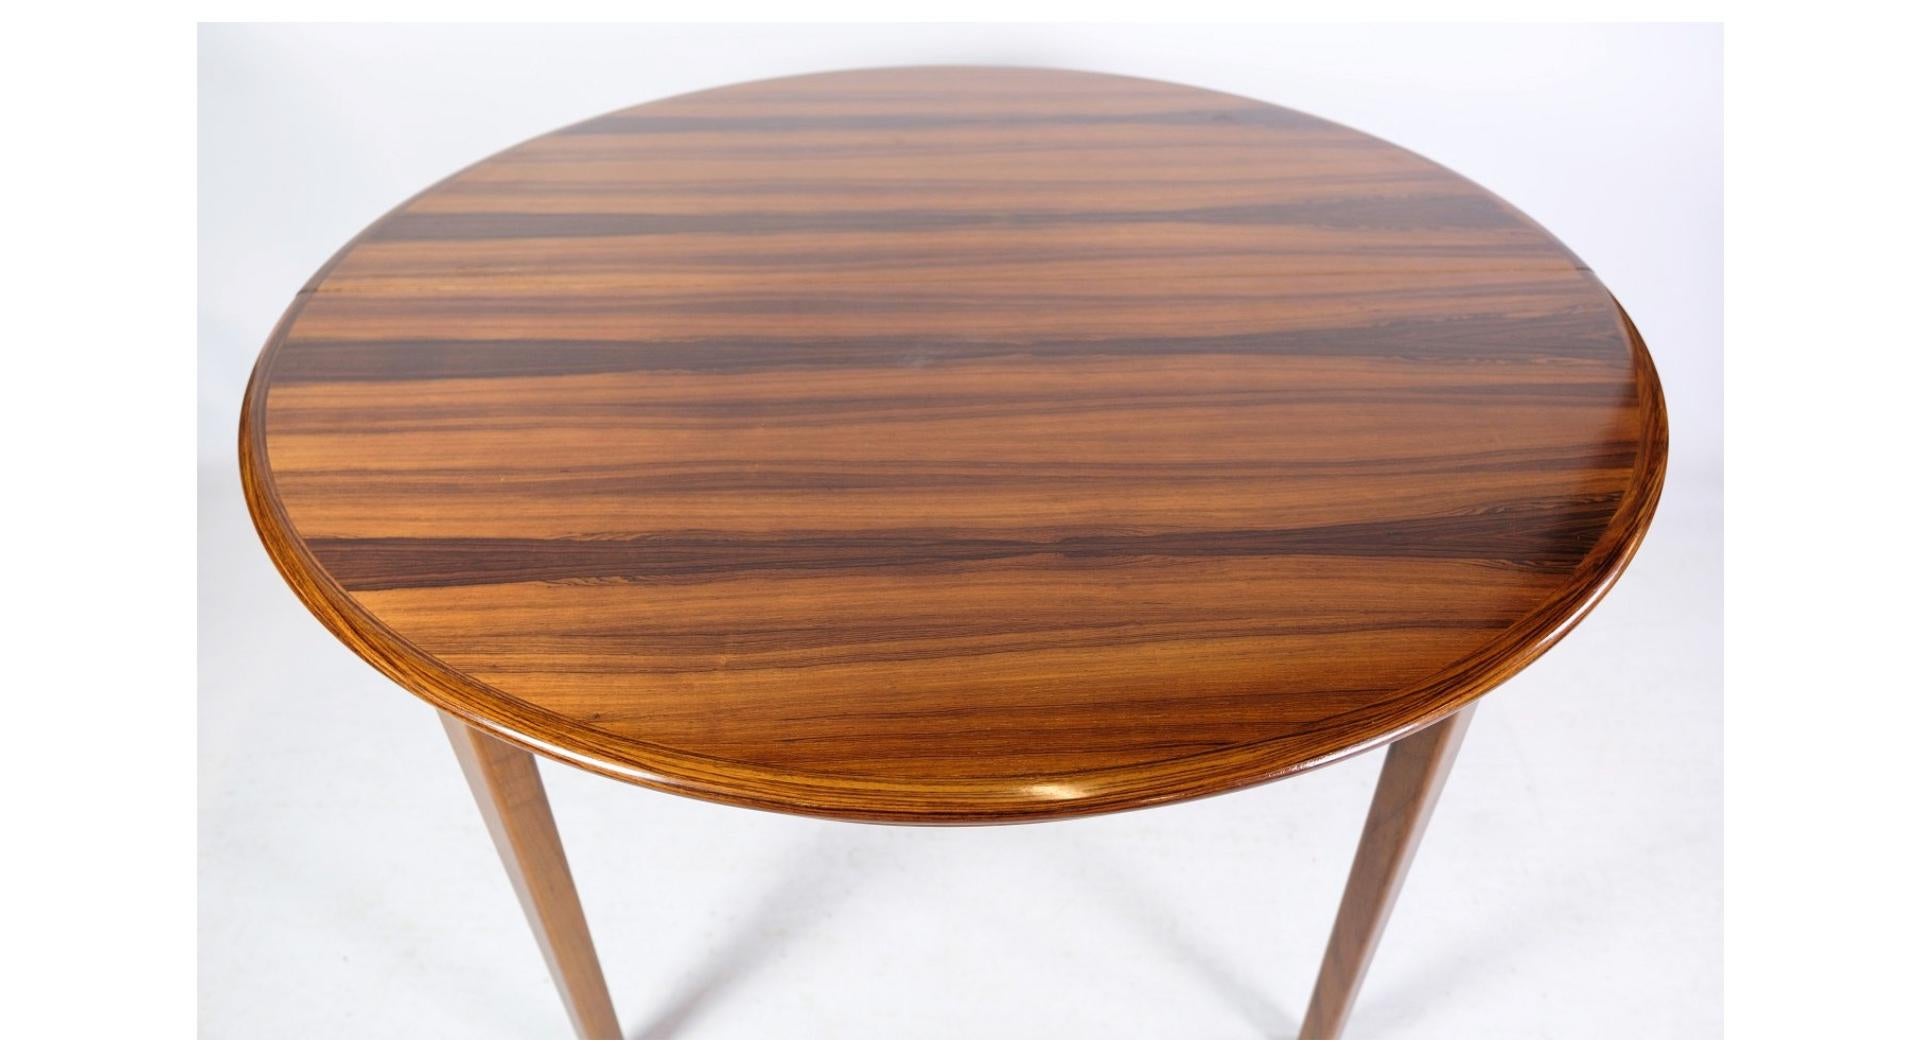 Der von Johannes Andersen entworfene und in der Uldum Møbelfabrik in den 1960er Jahren hergestellte Esstisch aus Palisanderholz ist ein bemerkenswertes Beispiel für dänisches Möbeldesign aus der Mitte des Jahrhunderts. Dieser Tisch, der für seine